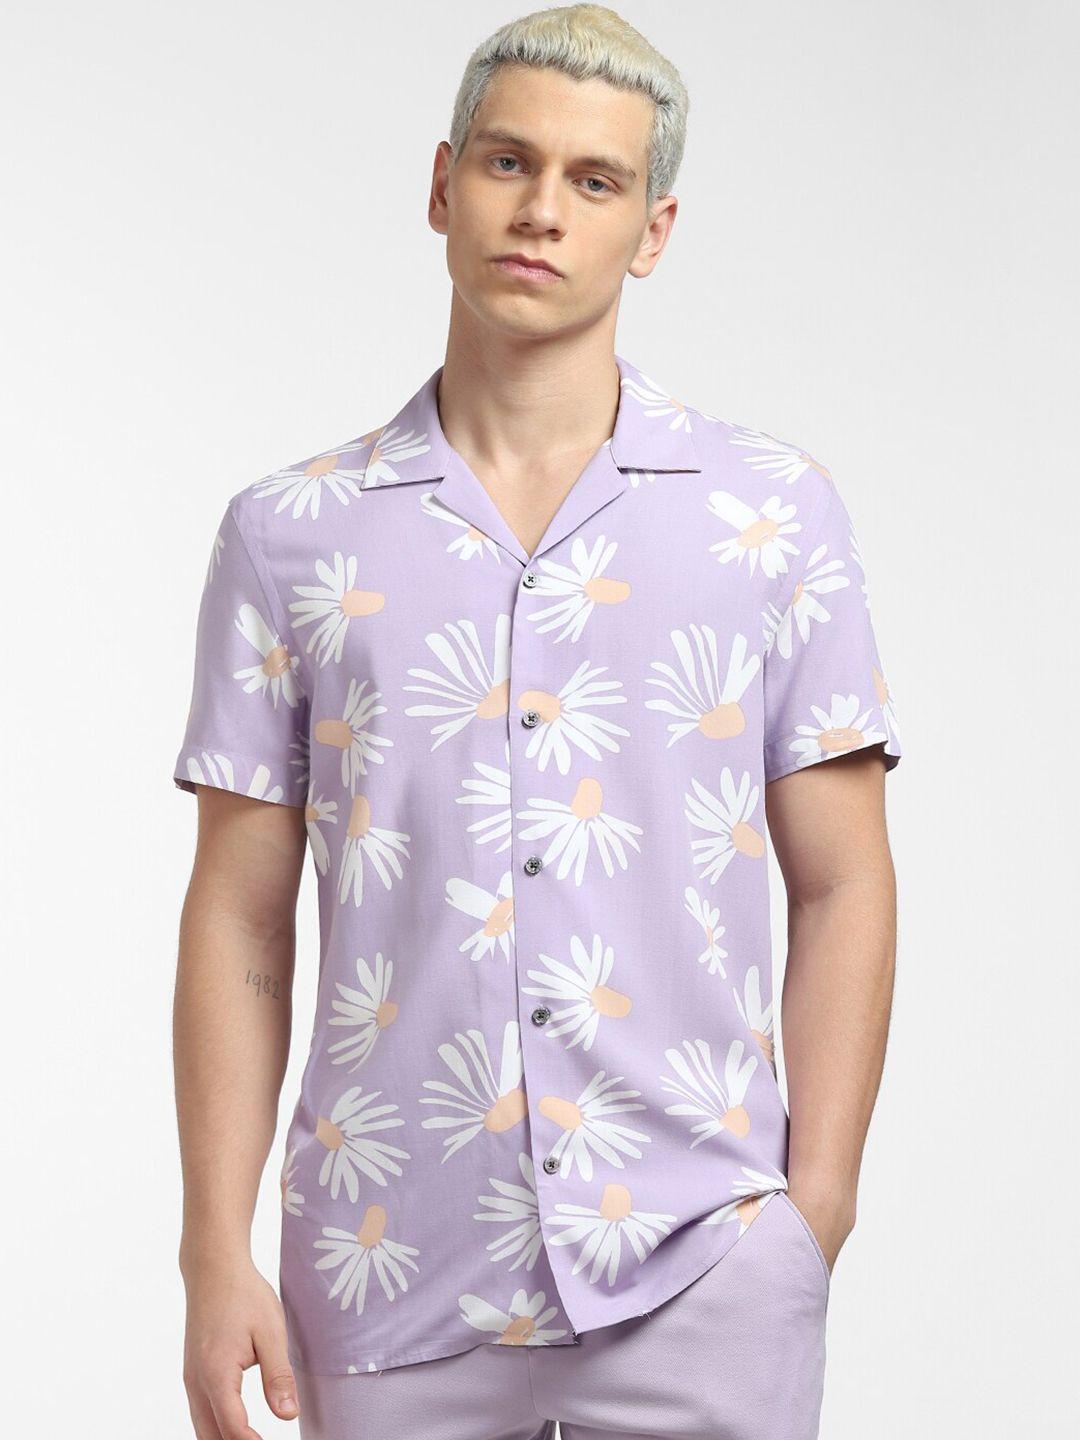 jack & jones men purple floral printed casual shirt